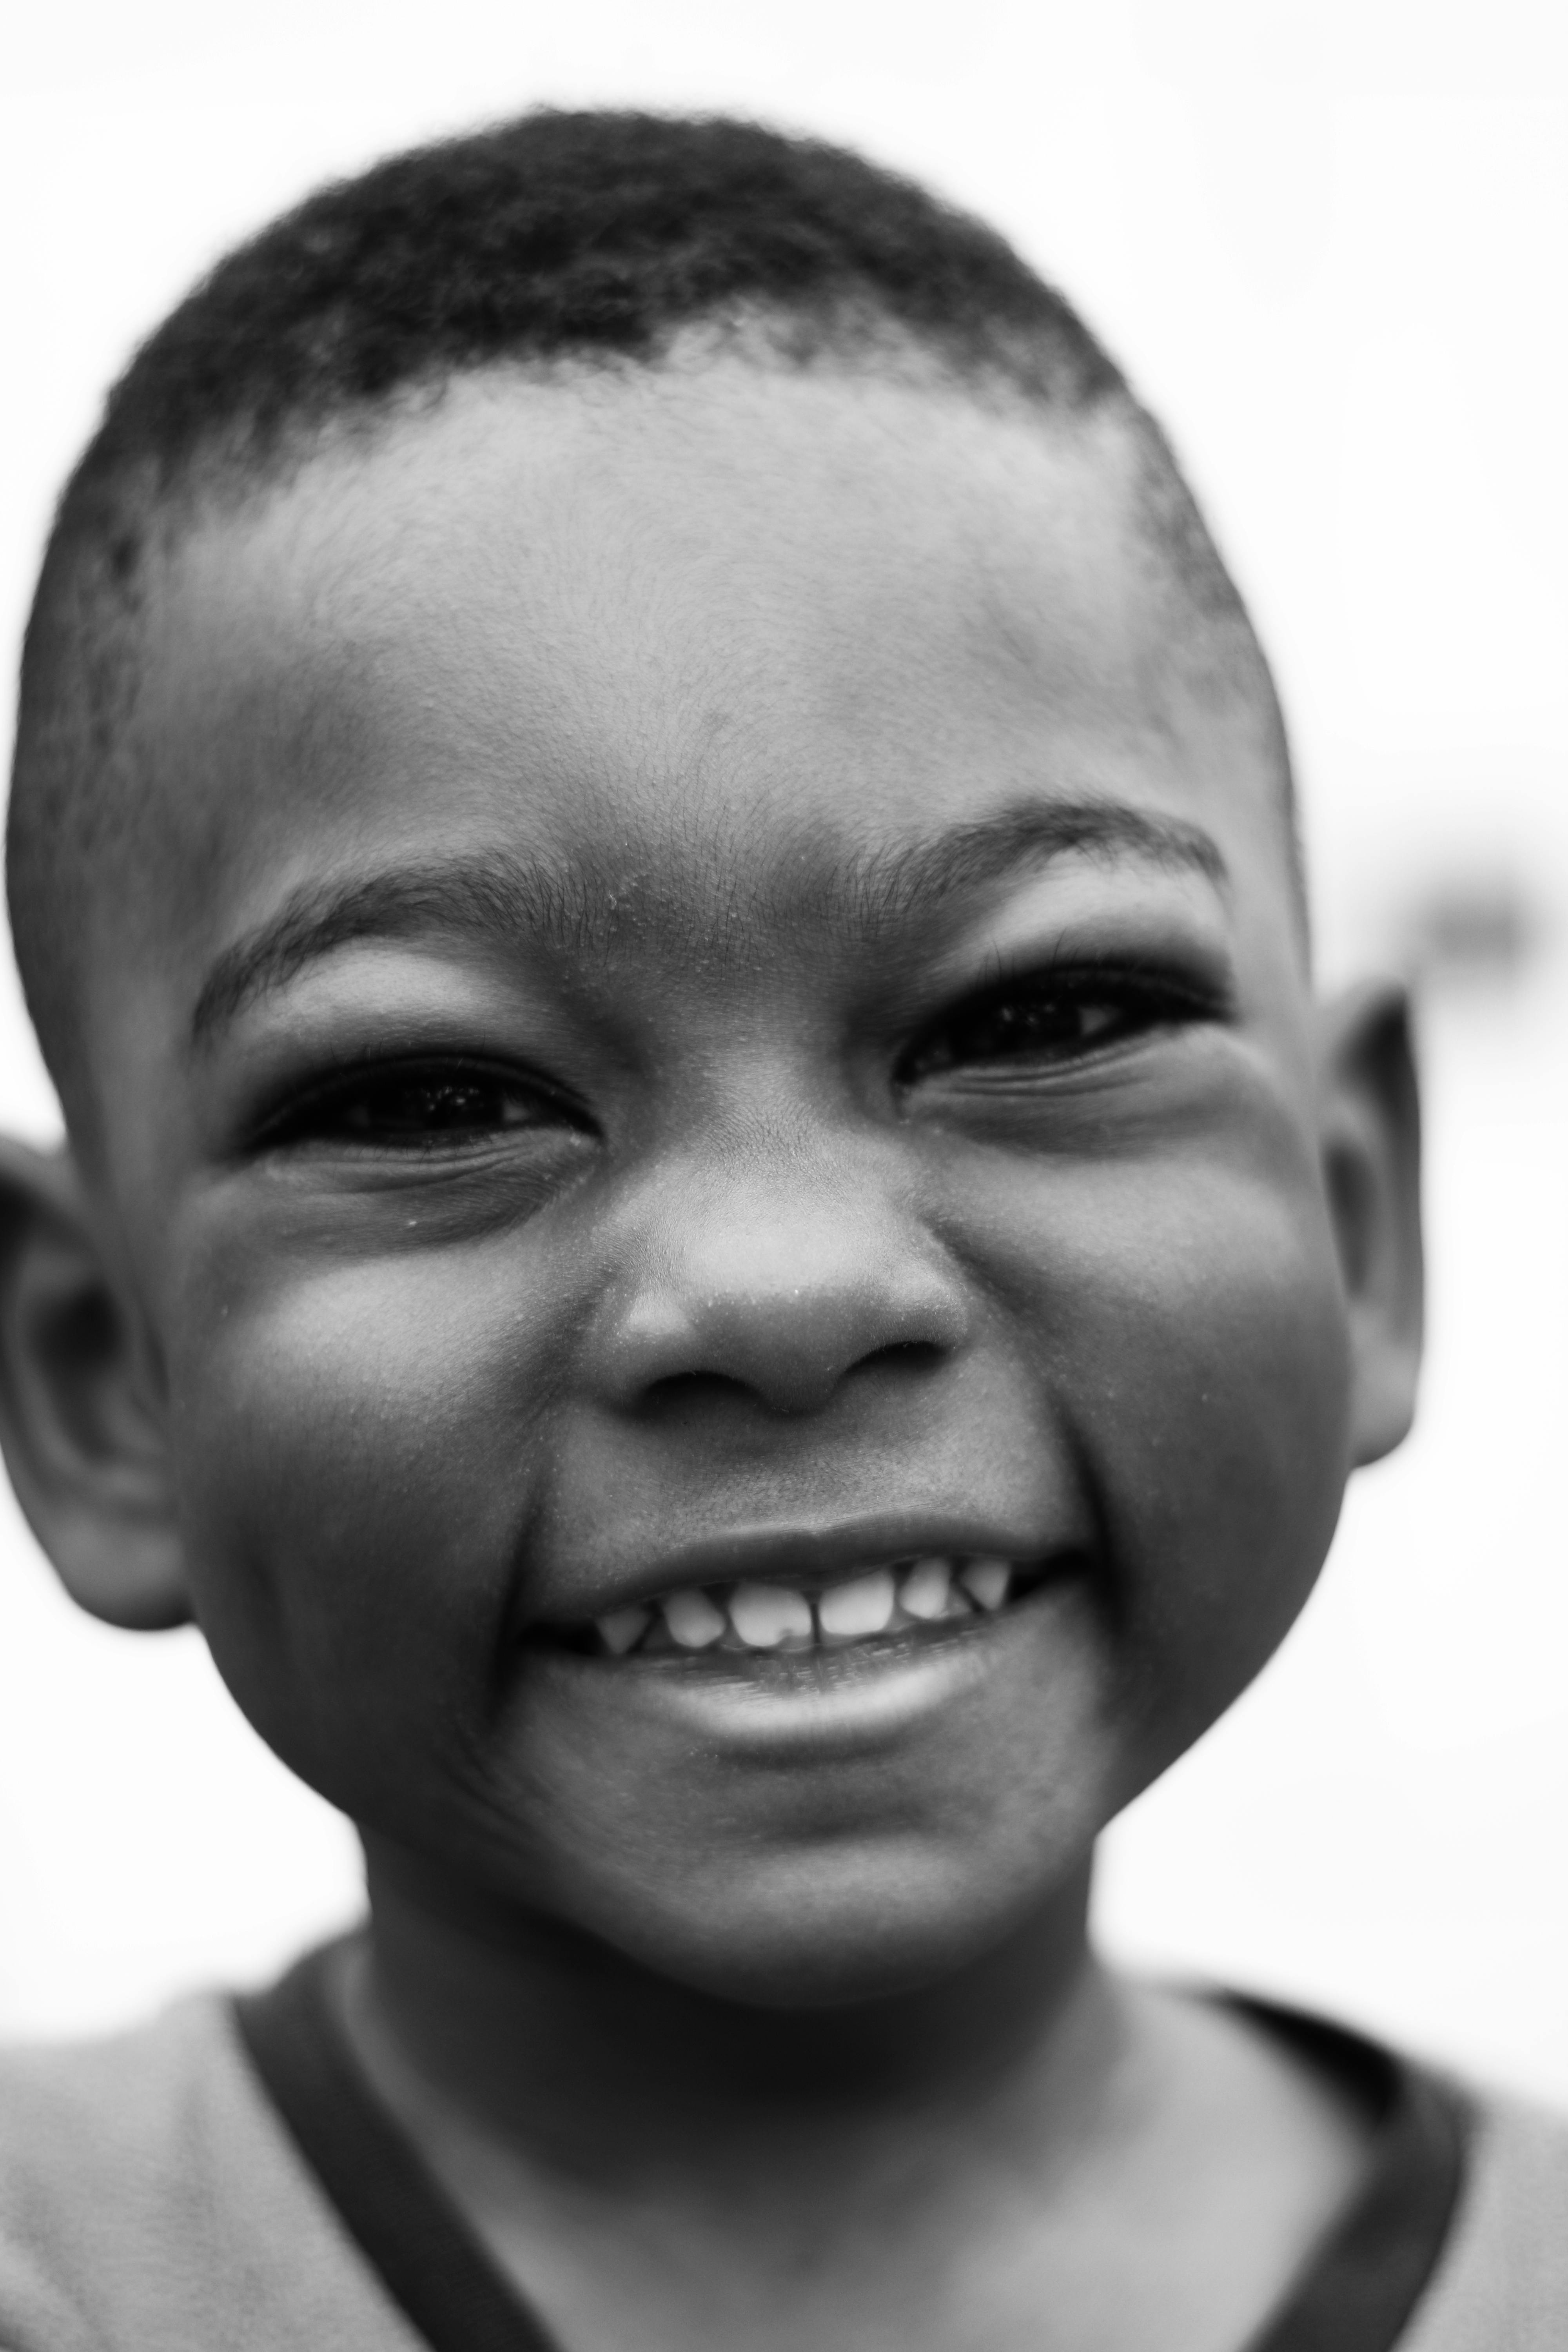 smiling black kid